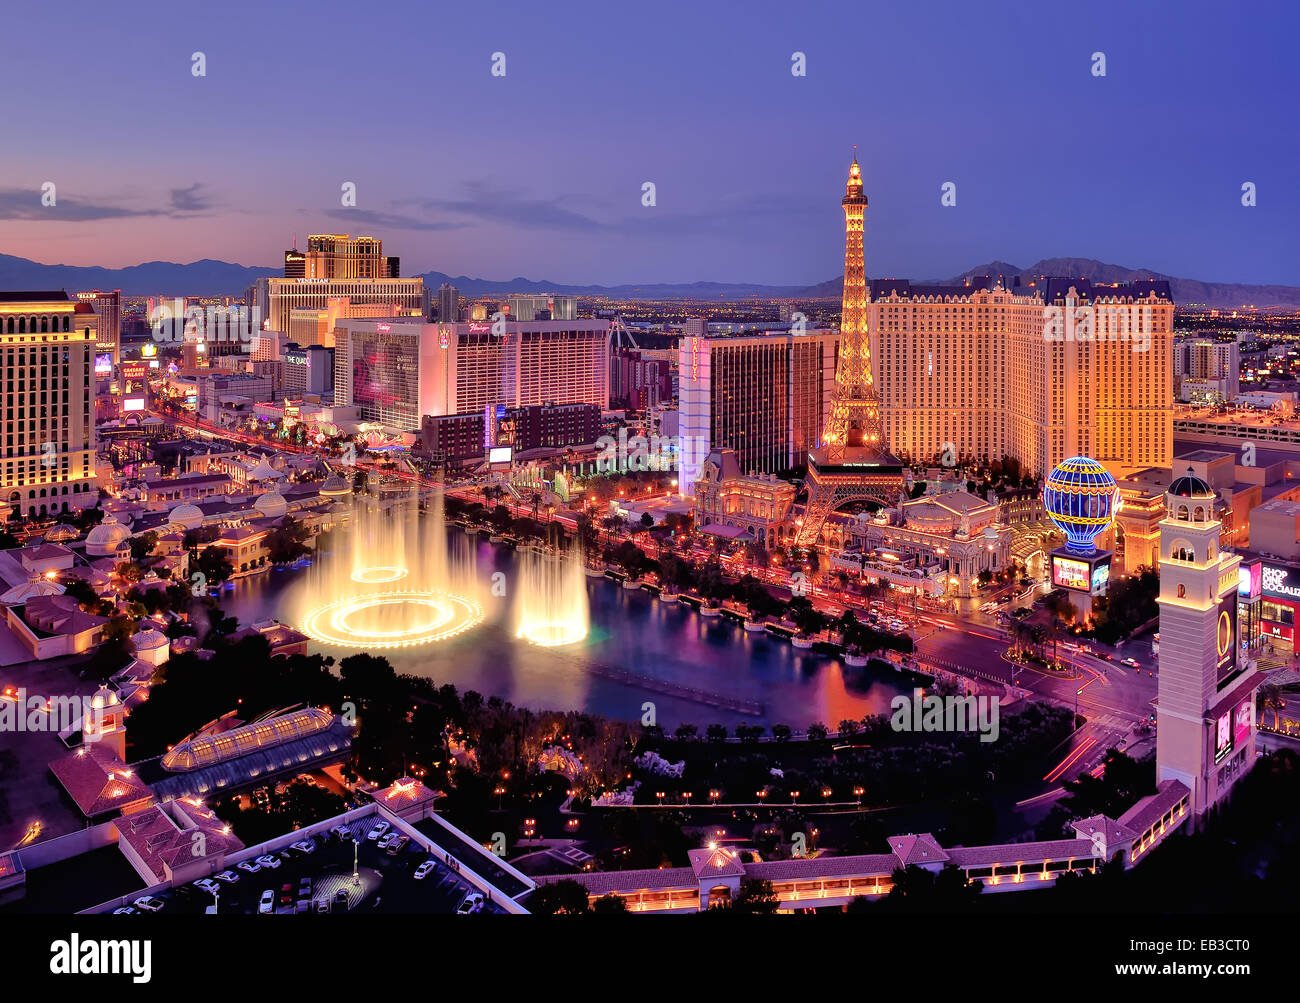 Ciudad de la ciudad por la noche con fuentes de agua Bellagio Hotel, las Vegas, Nevada, EE.UU. Foto de stock